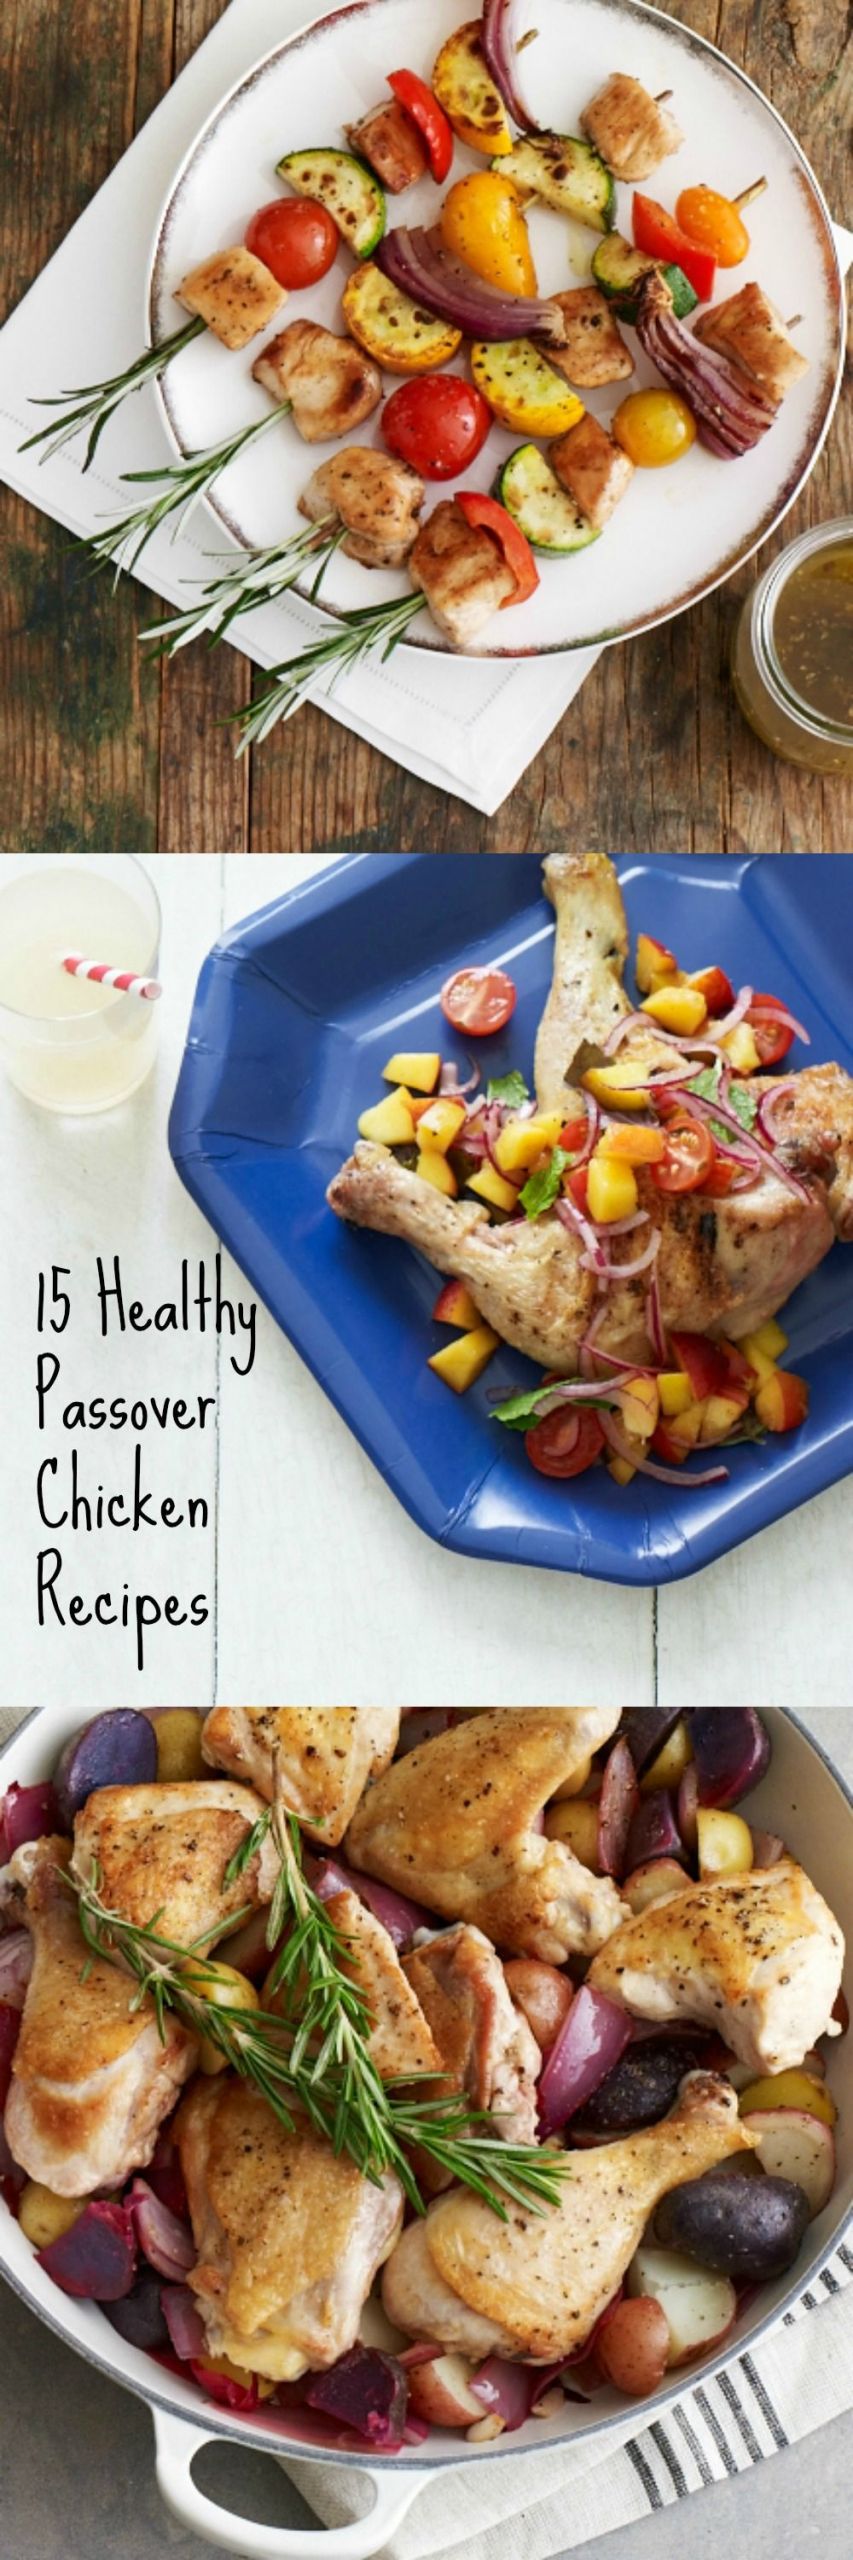 Passover Chicken Recipe
 15 Healthy Passover Chicken Recipes